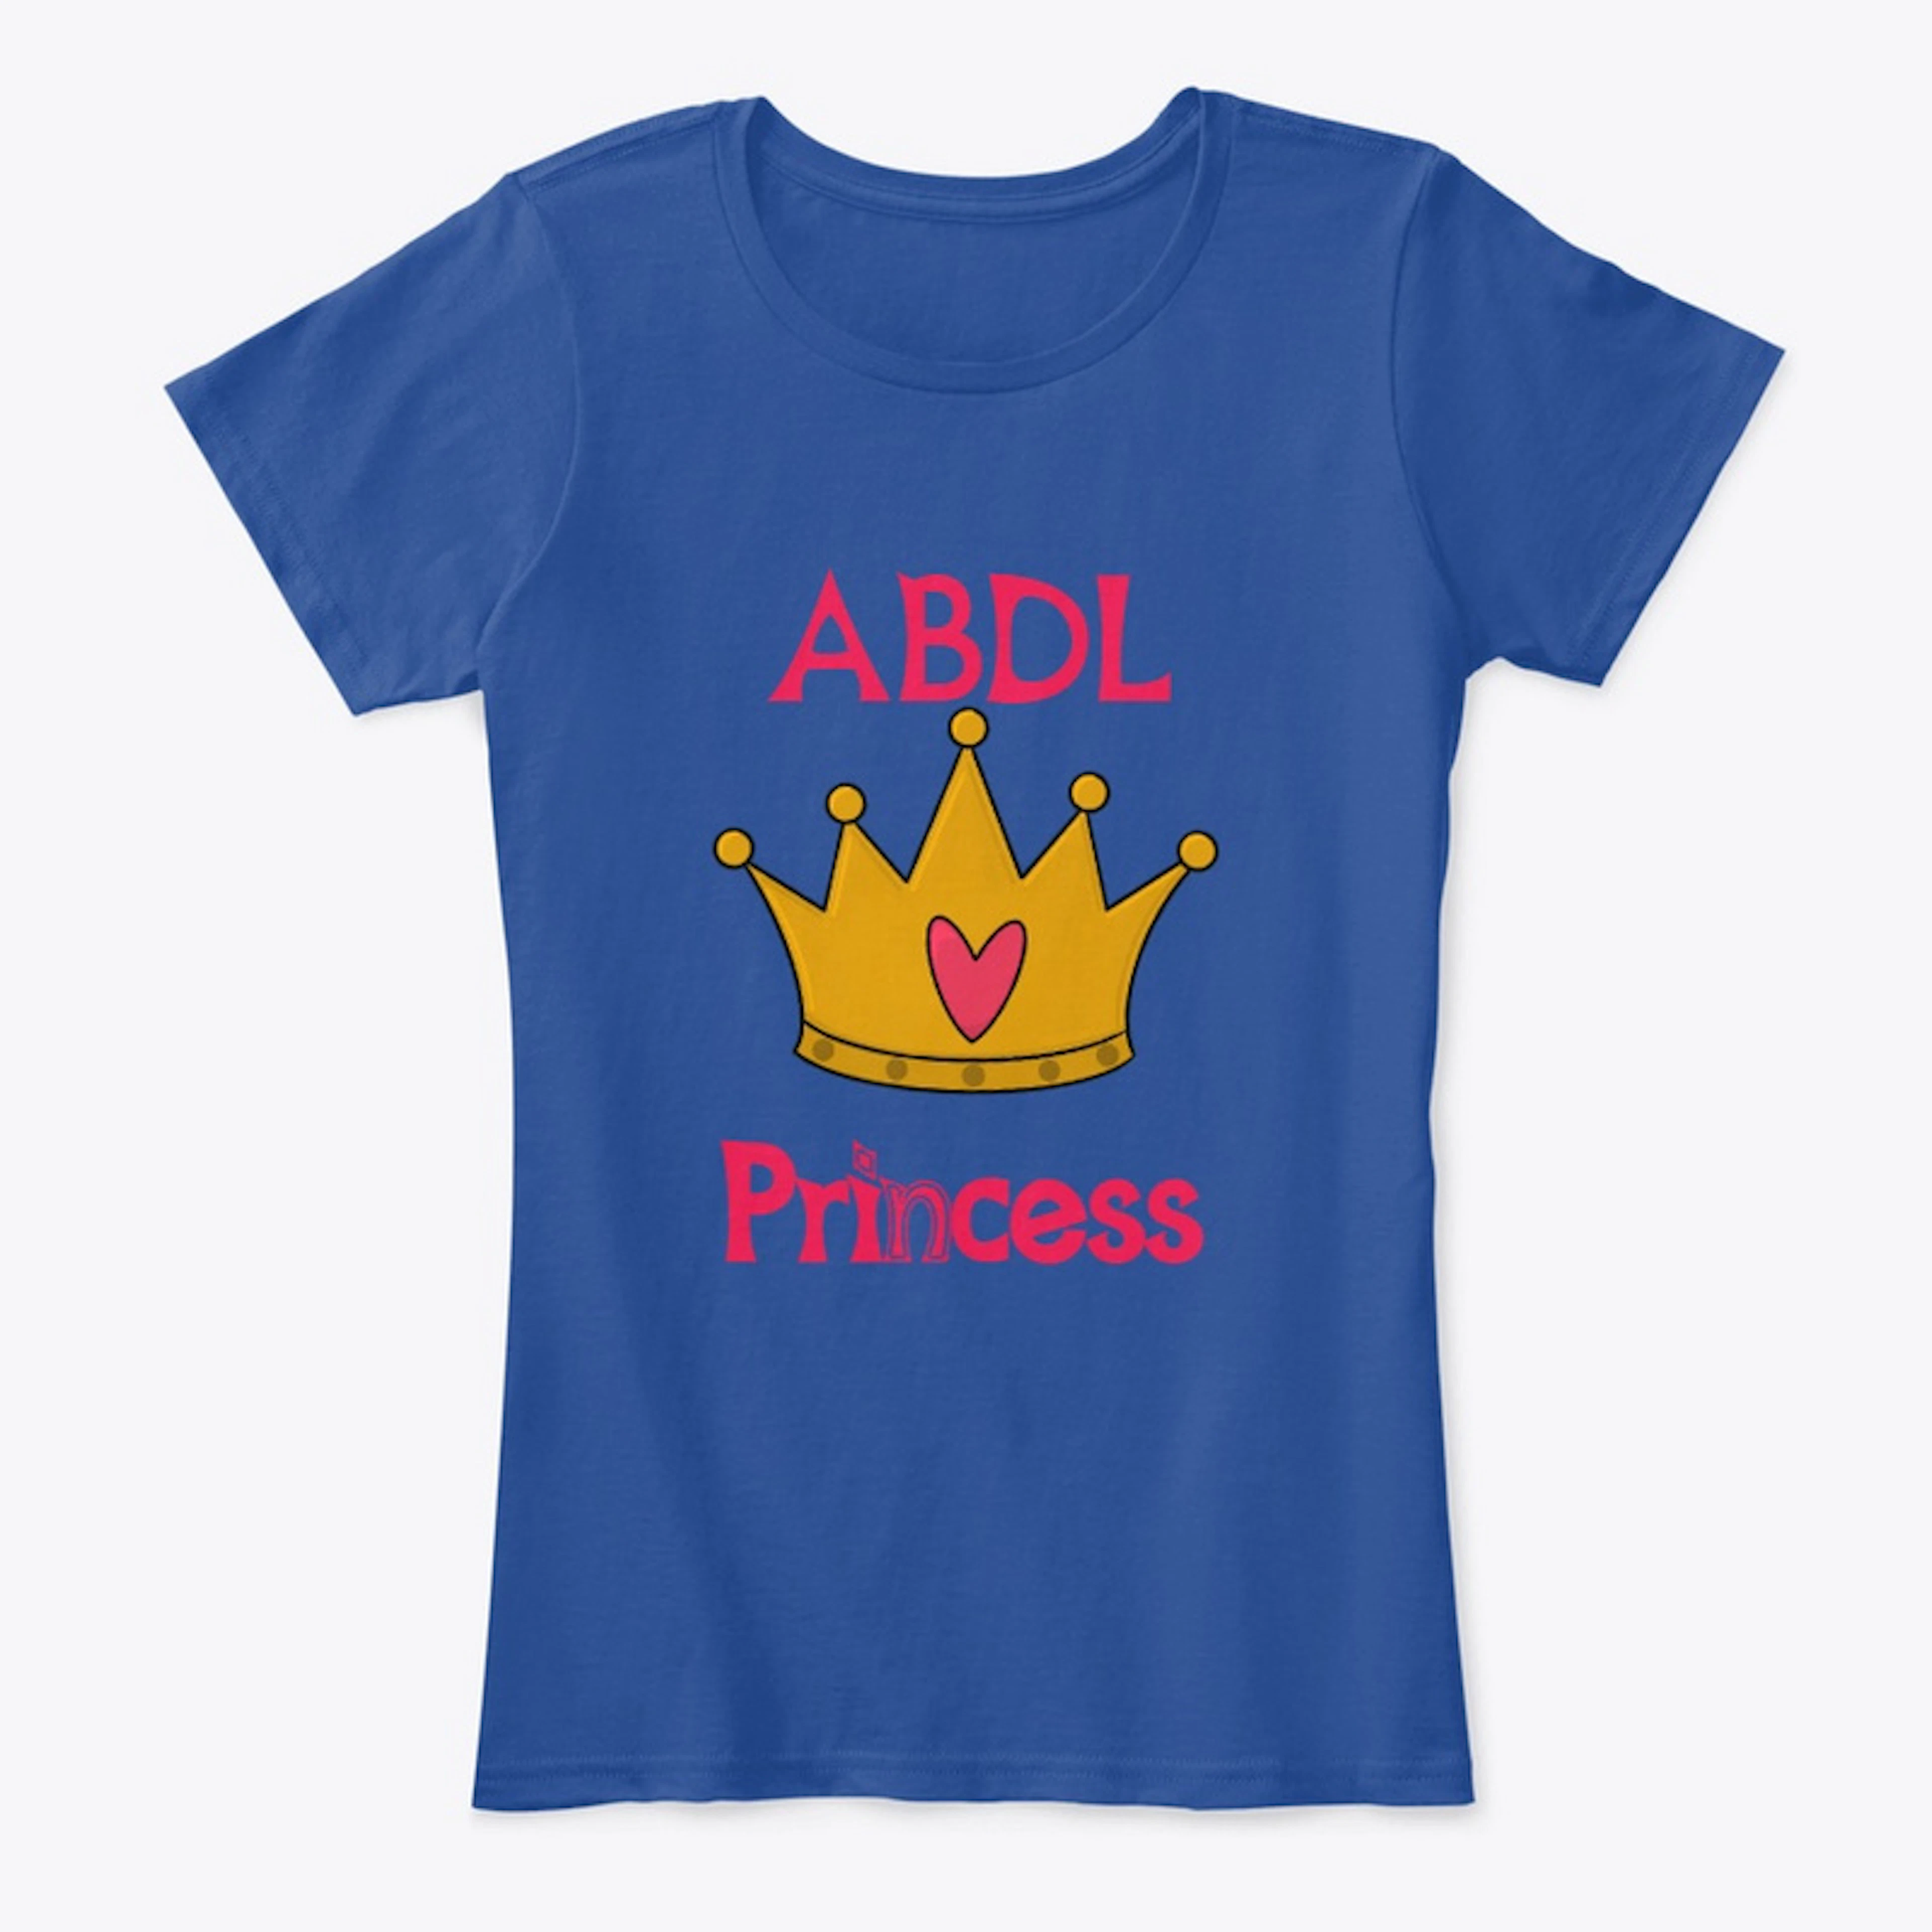 ABDL Princess 